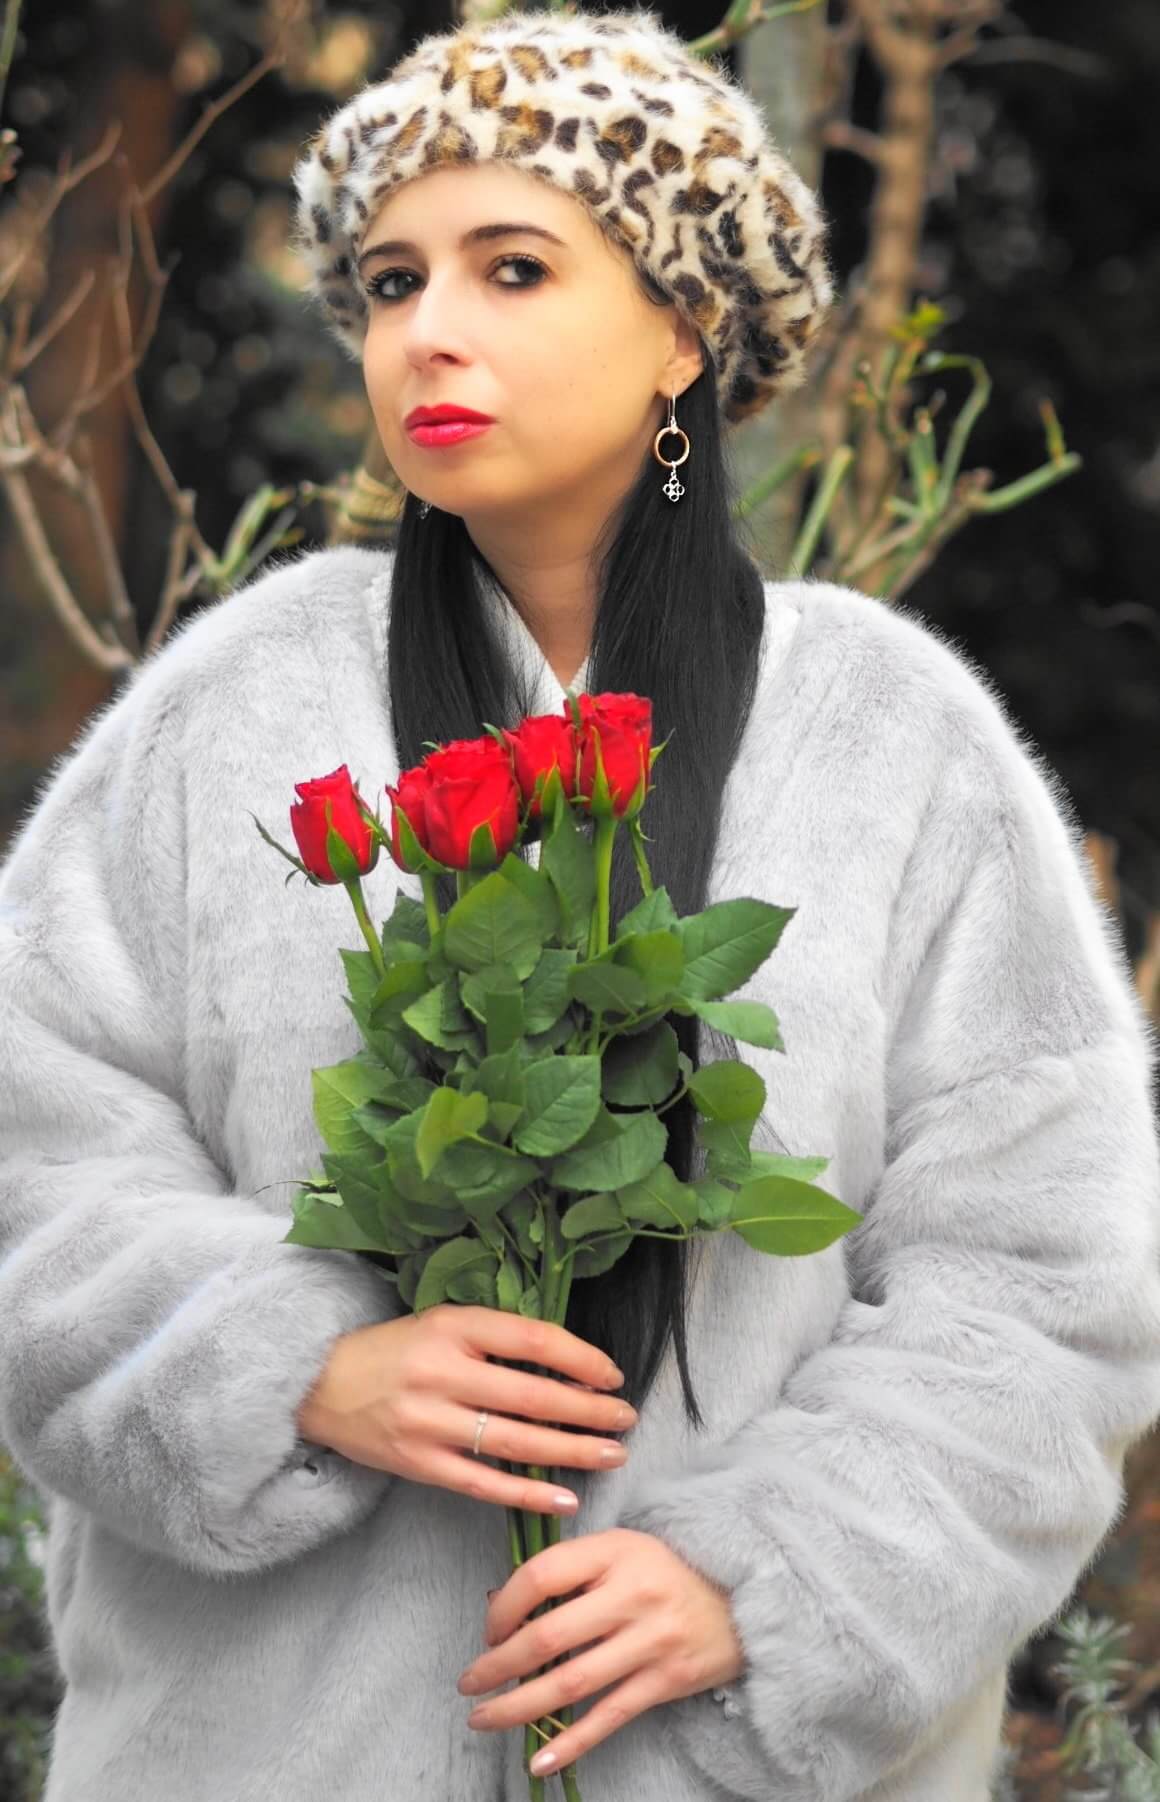 Heute zeige ich euch die edle, neue La Fleur Kollektion von Charriol passend als Präsent zum Valentinstag und stelle die Luxusmarke näher auf dem Blog vor